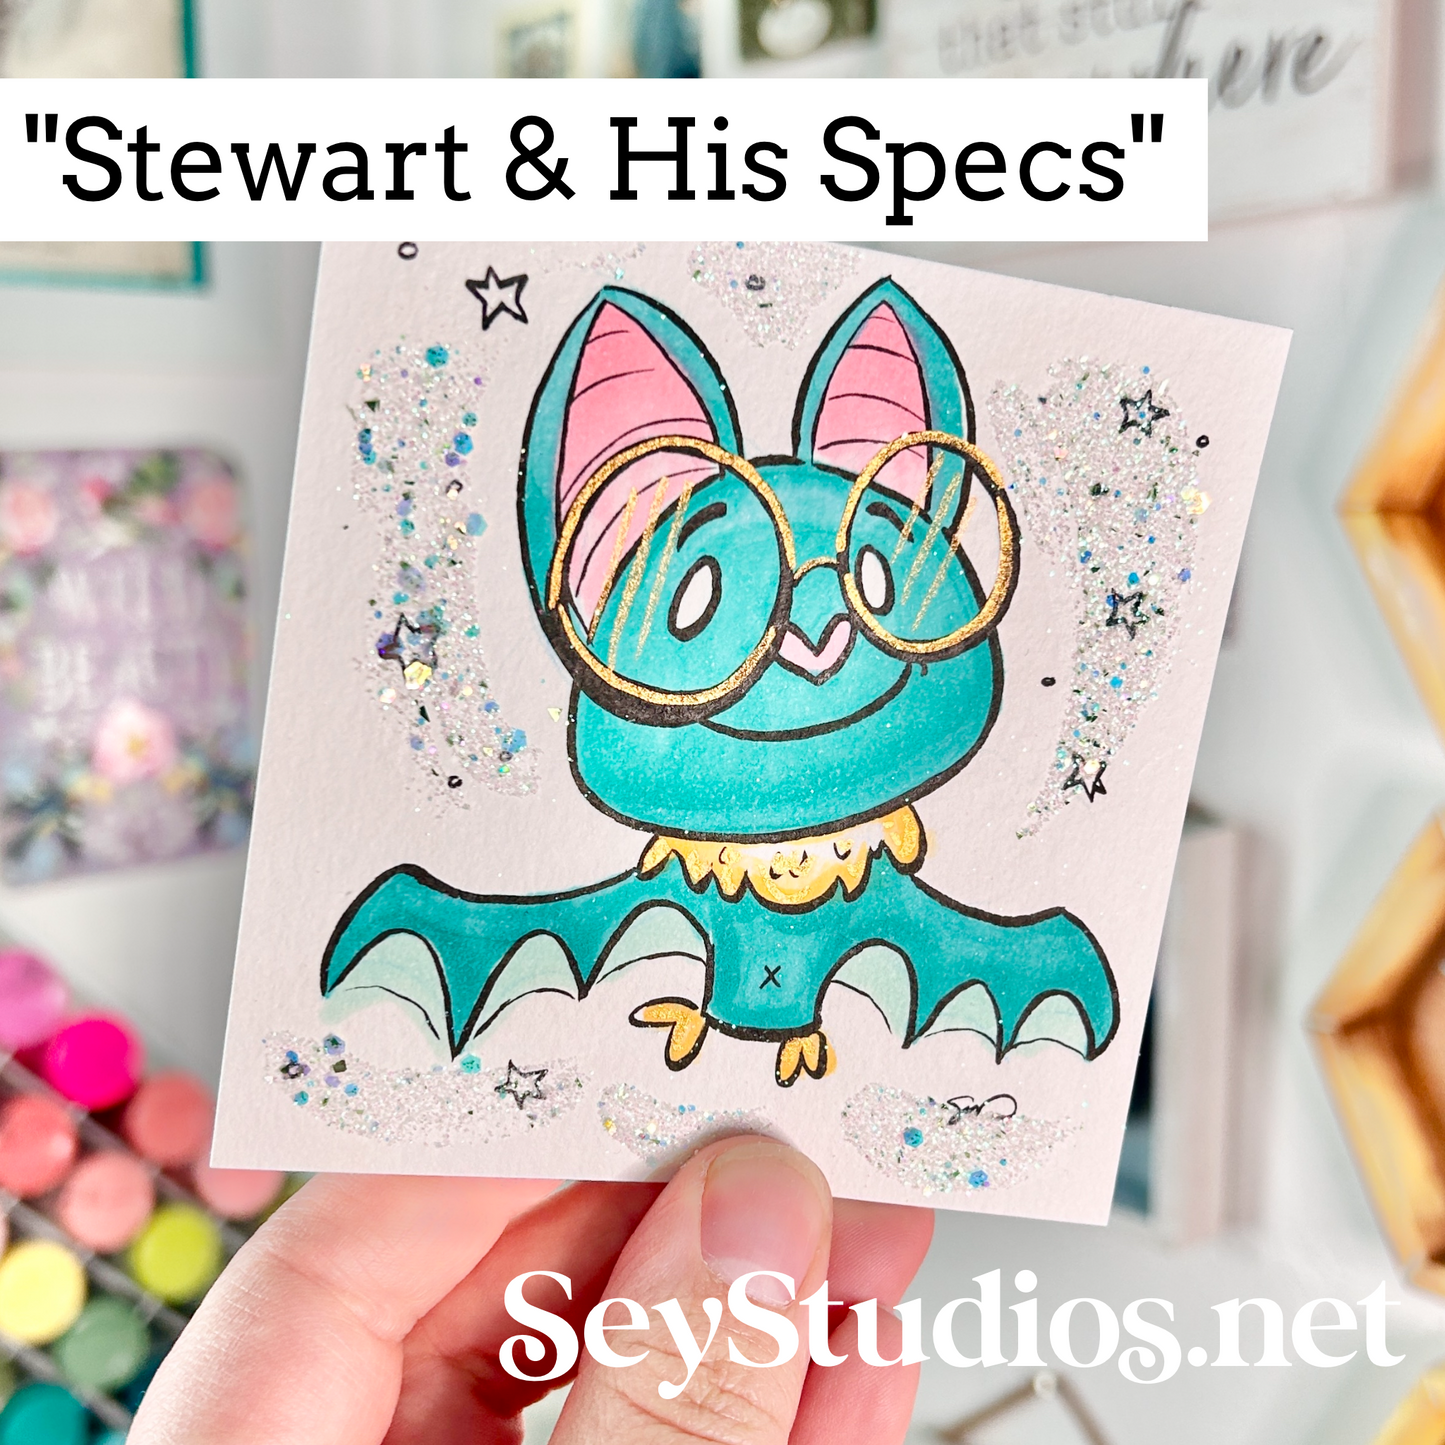 Original - “Stewart & His Specs” Sketch